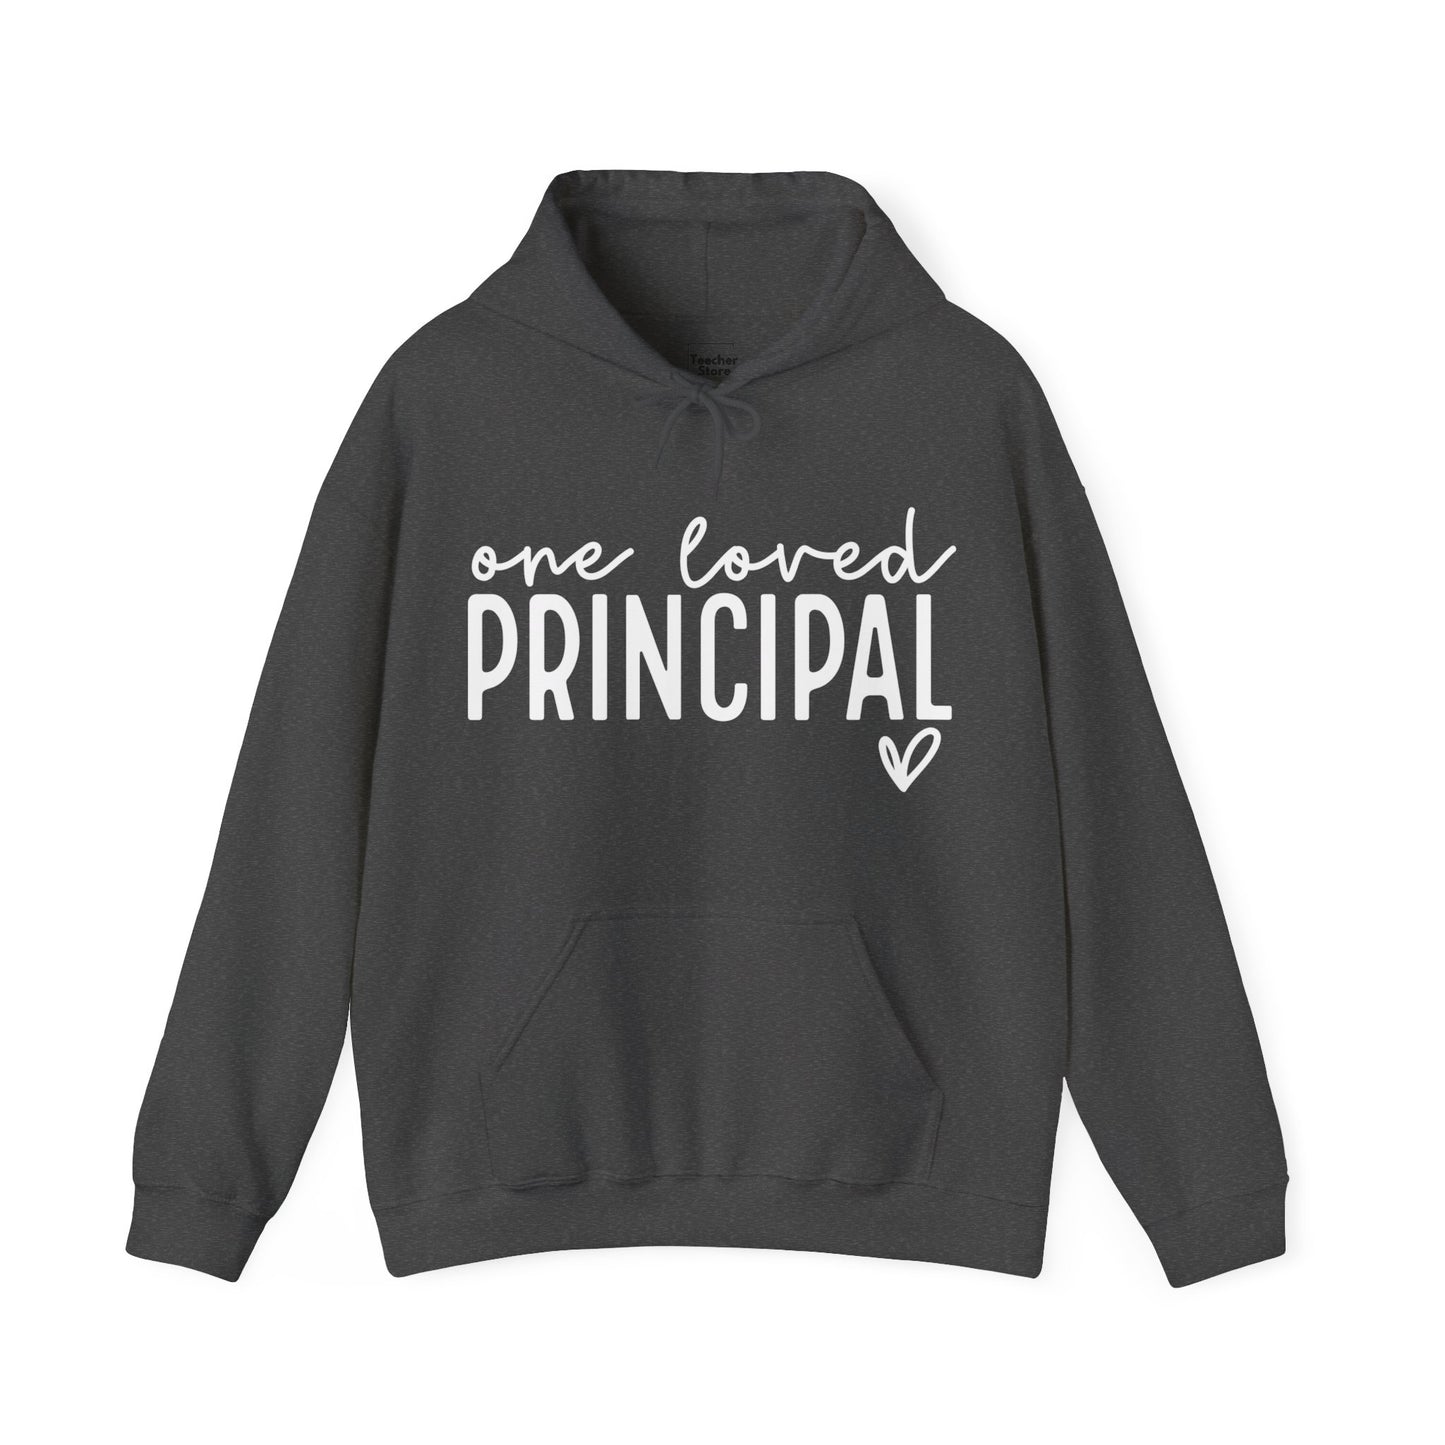 Loved Principal Hooded Sweatshirt